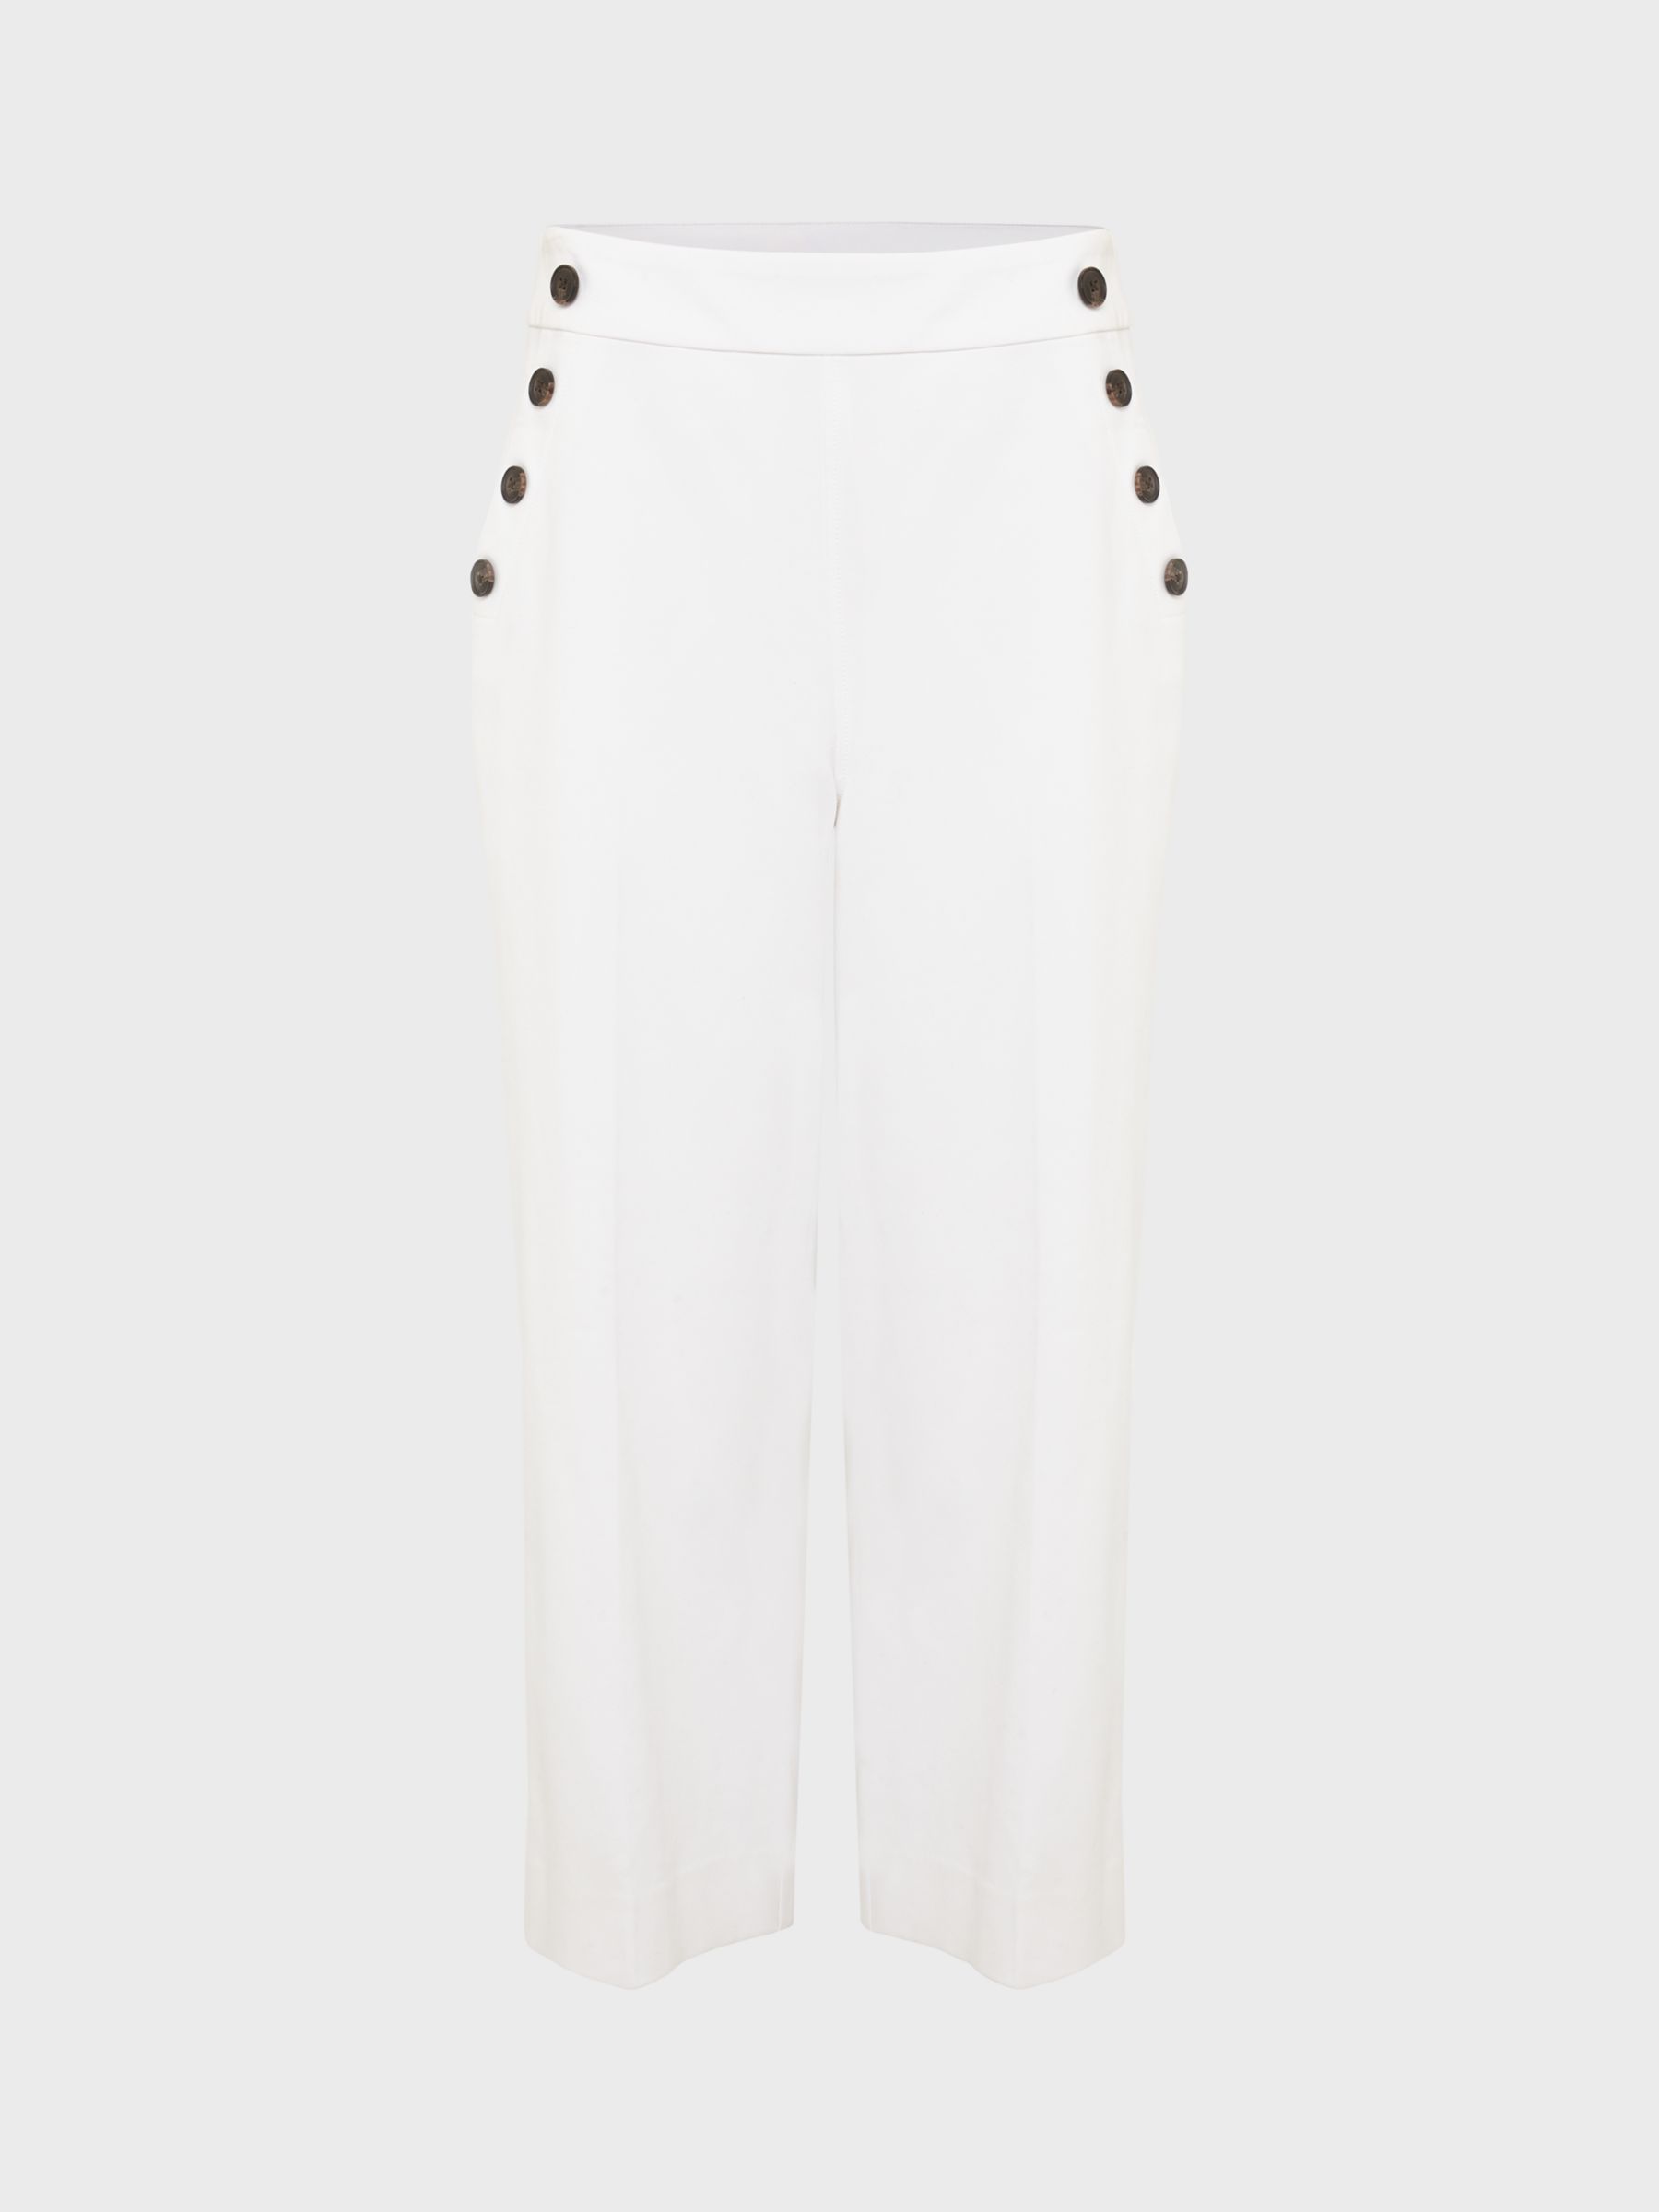 Hobbs Petite Simone Button Detail Trousers, White, 10